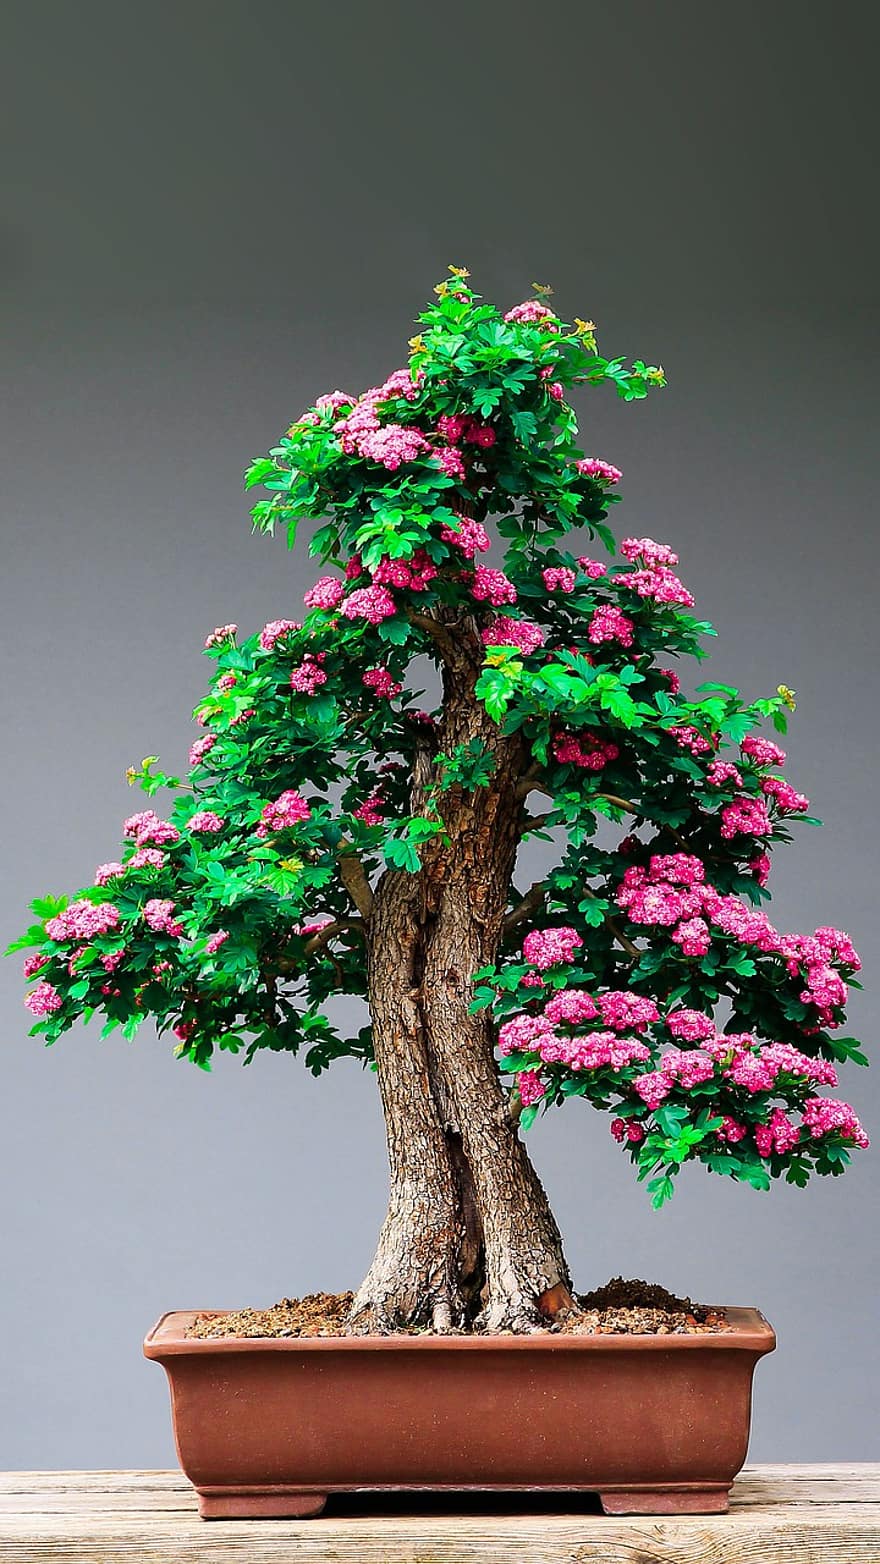 Bonsai, Tree, Flowers, Leaves, Foliage, Flora, Botany, Pot, Decorative, Decoration, De Póte